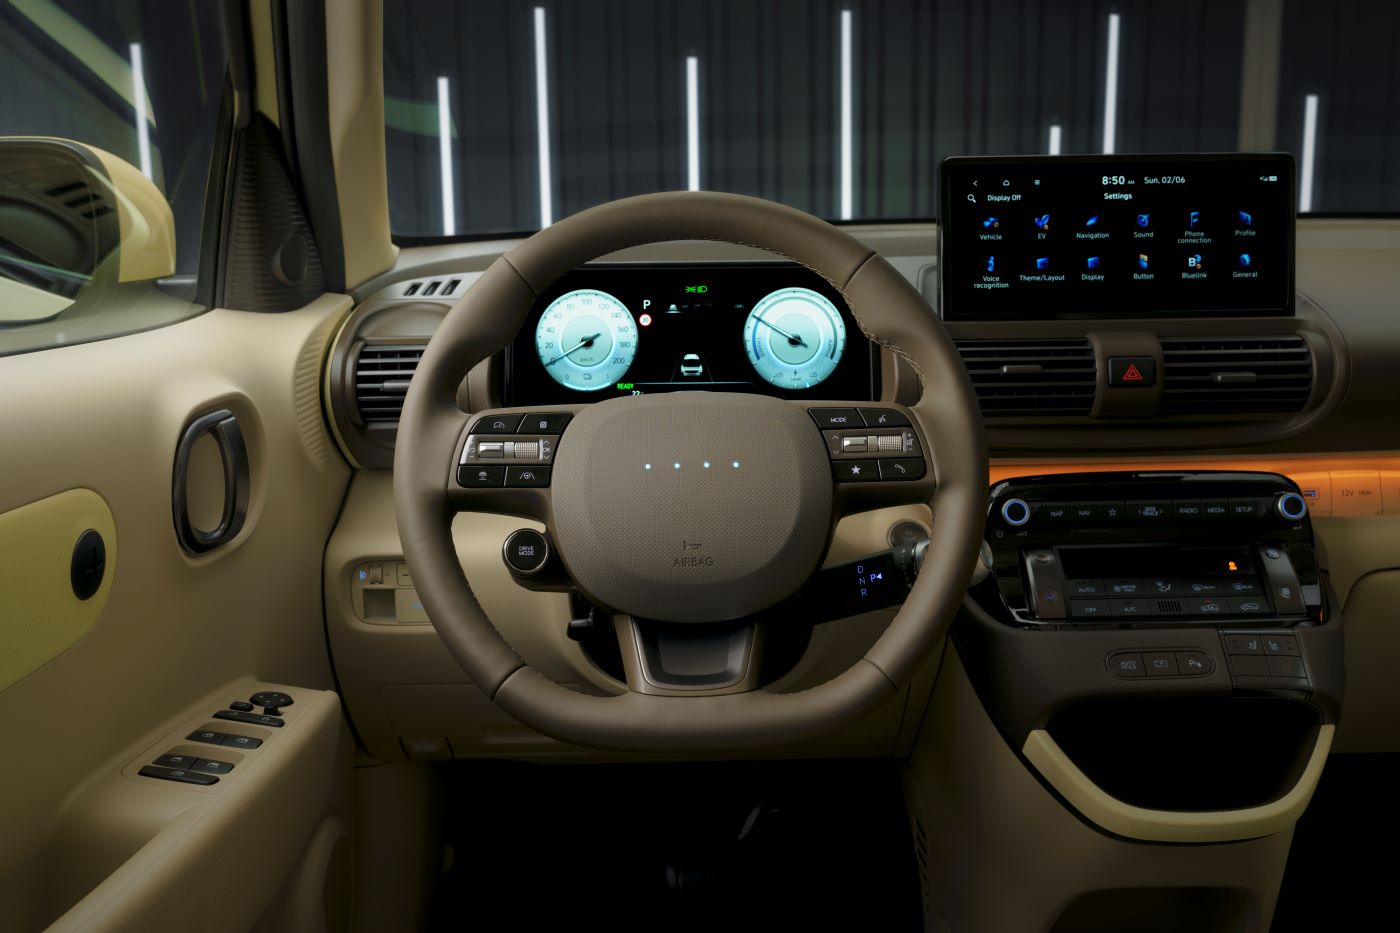 El Hyundai Inster 100% eléctrico, el auto urbano hasta con 355 km de autonomía según WLTP. El INSTER se lanzará dentro de poco en el mundo con un modelo adicional que se unirá a la familia. V12MAGAZINE